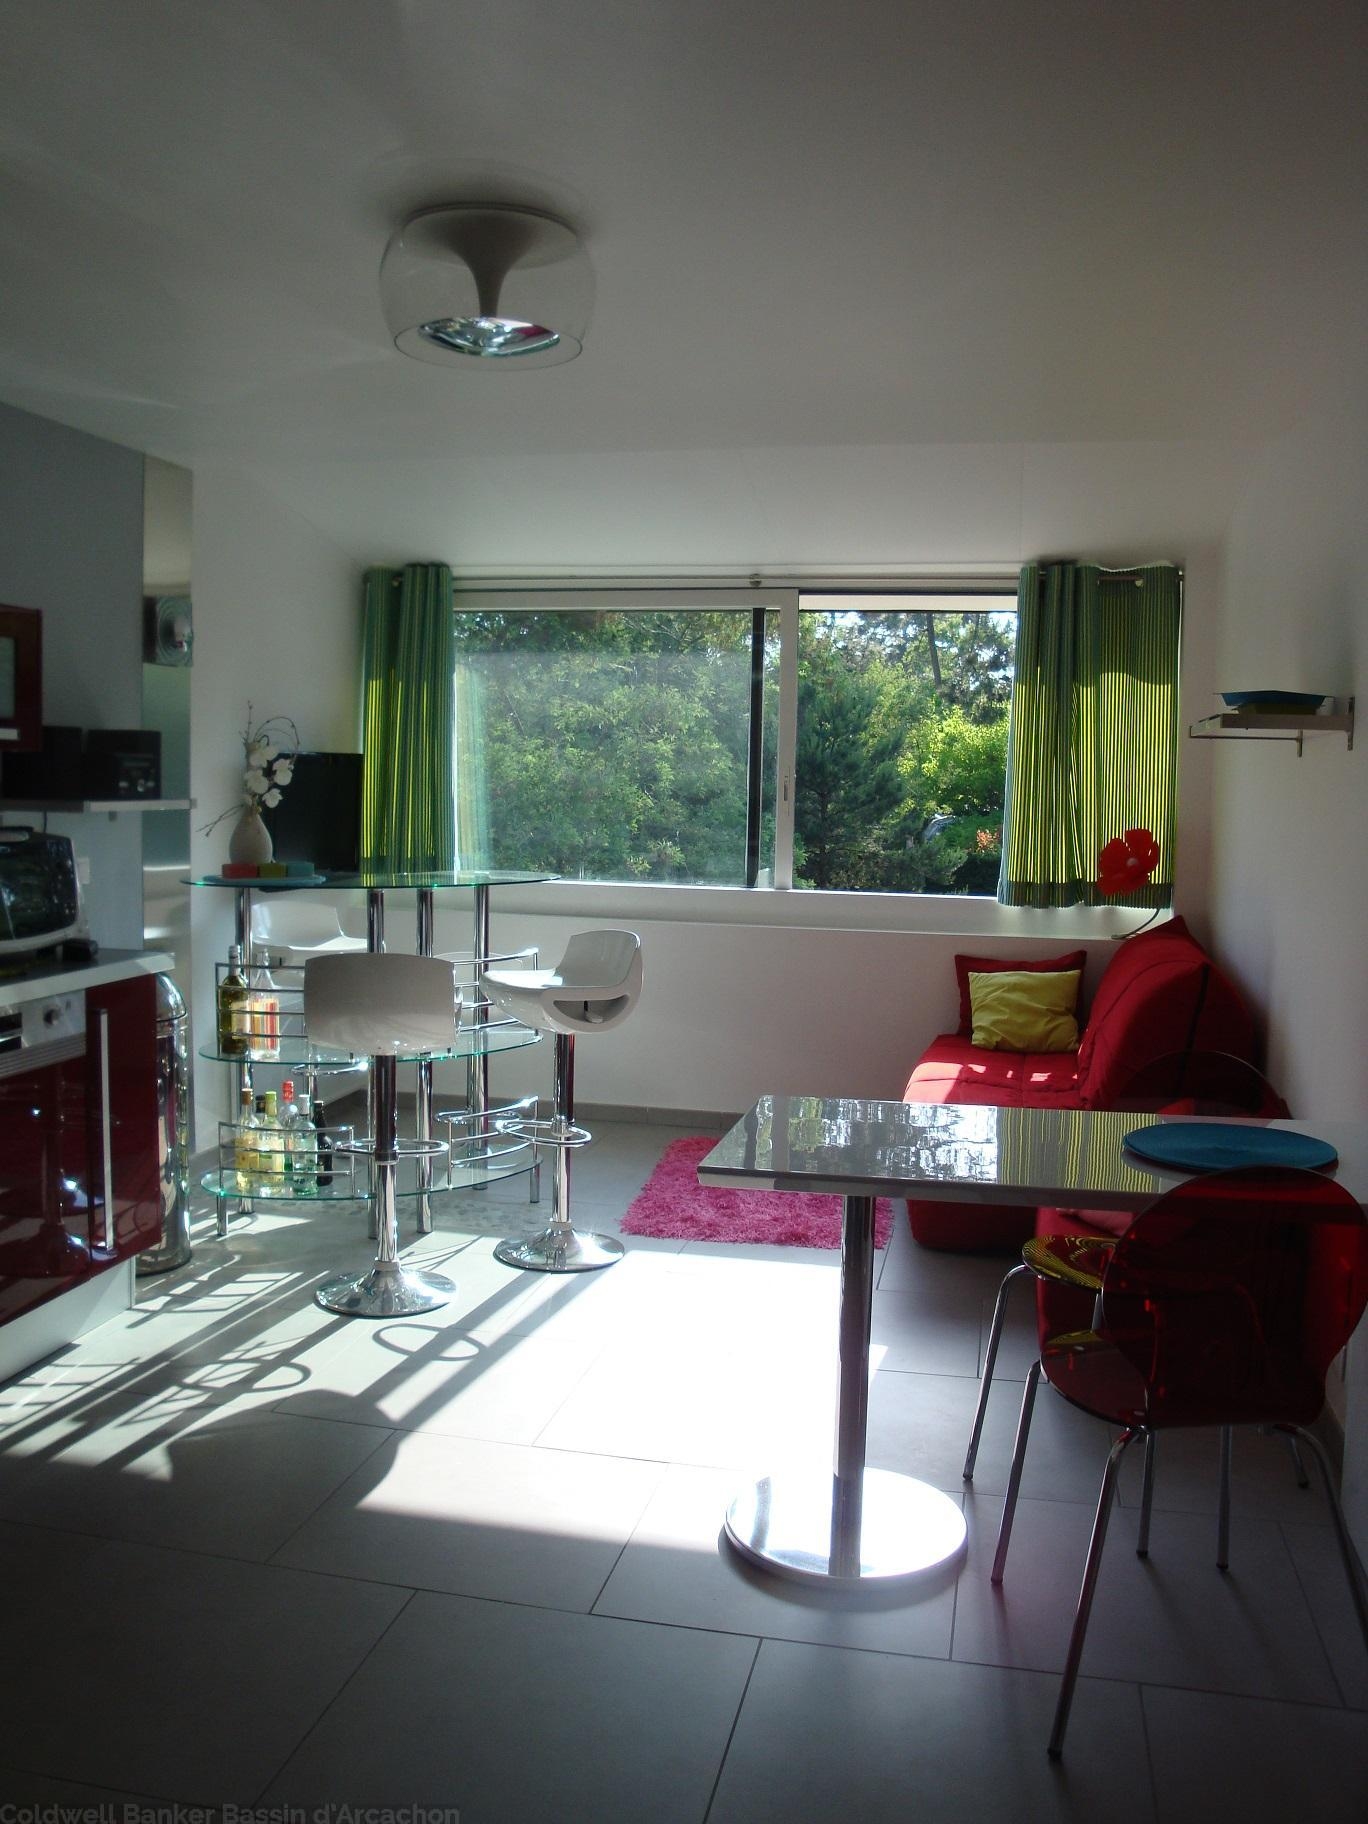 Location appartement 1 chambre entièrement rénové dans résidence privée avec piscine - Cap-Ferret